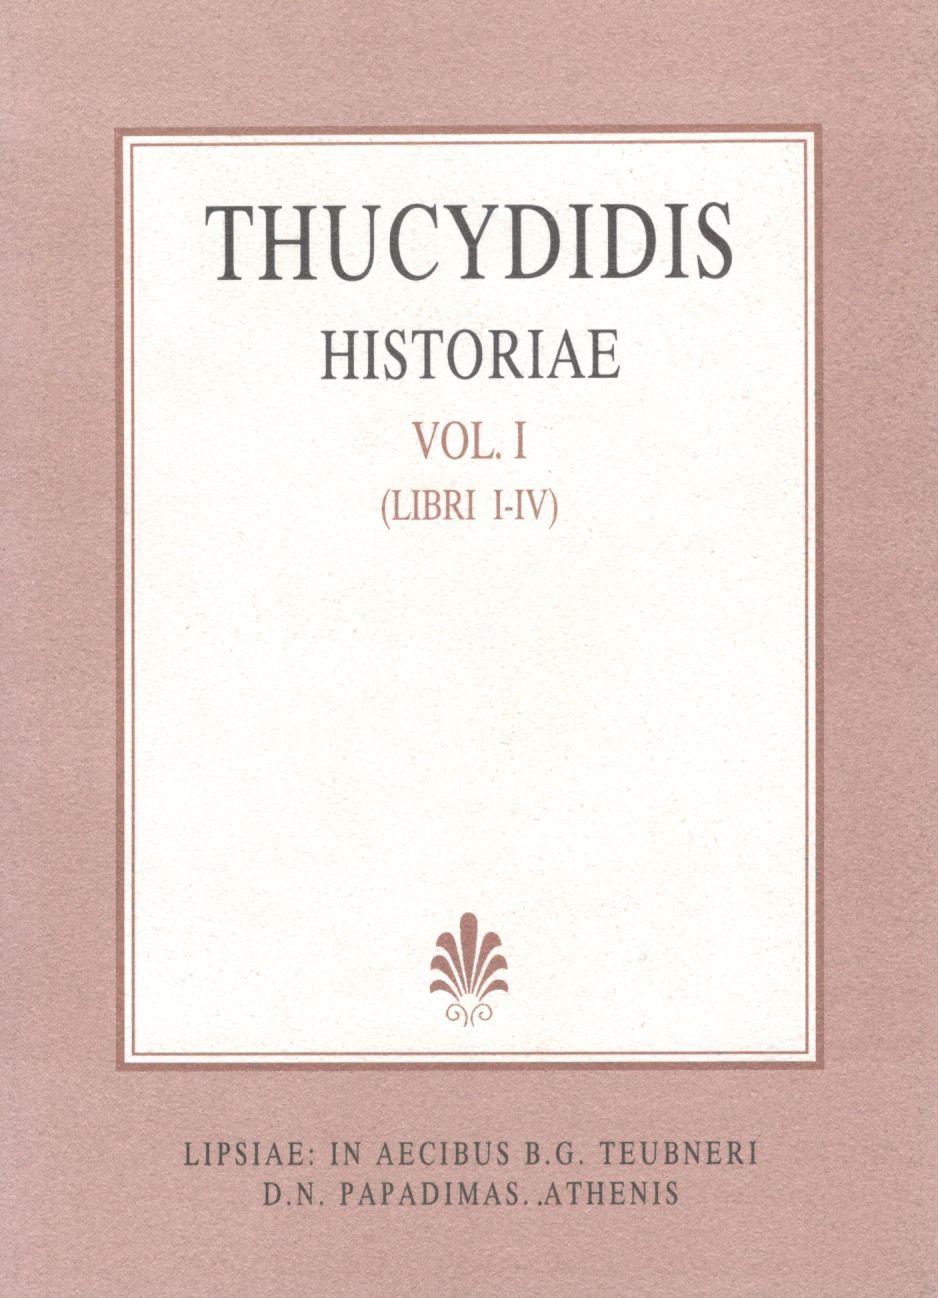 Thucydidis, Historiae, Vol. I, Libri I-IV [Θουκυδίδου, Ιστορίαι, τ. Α']